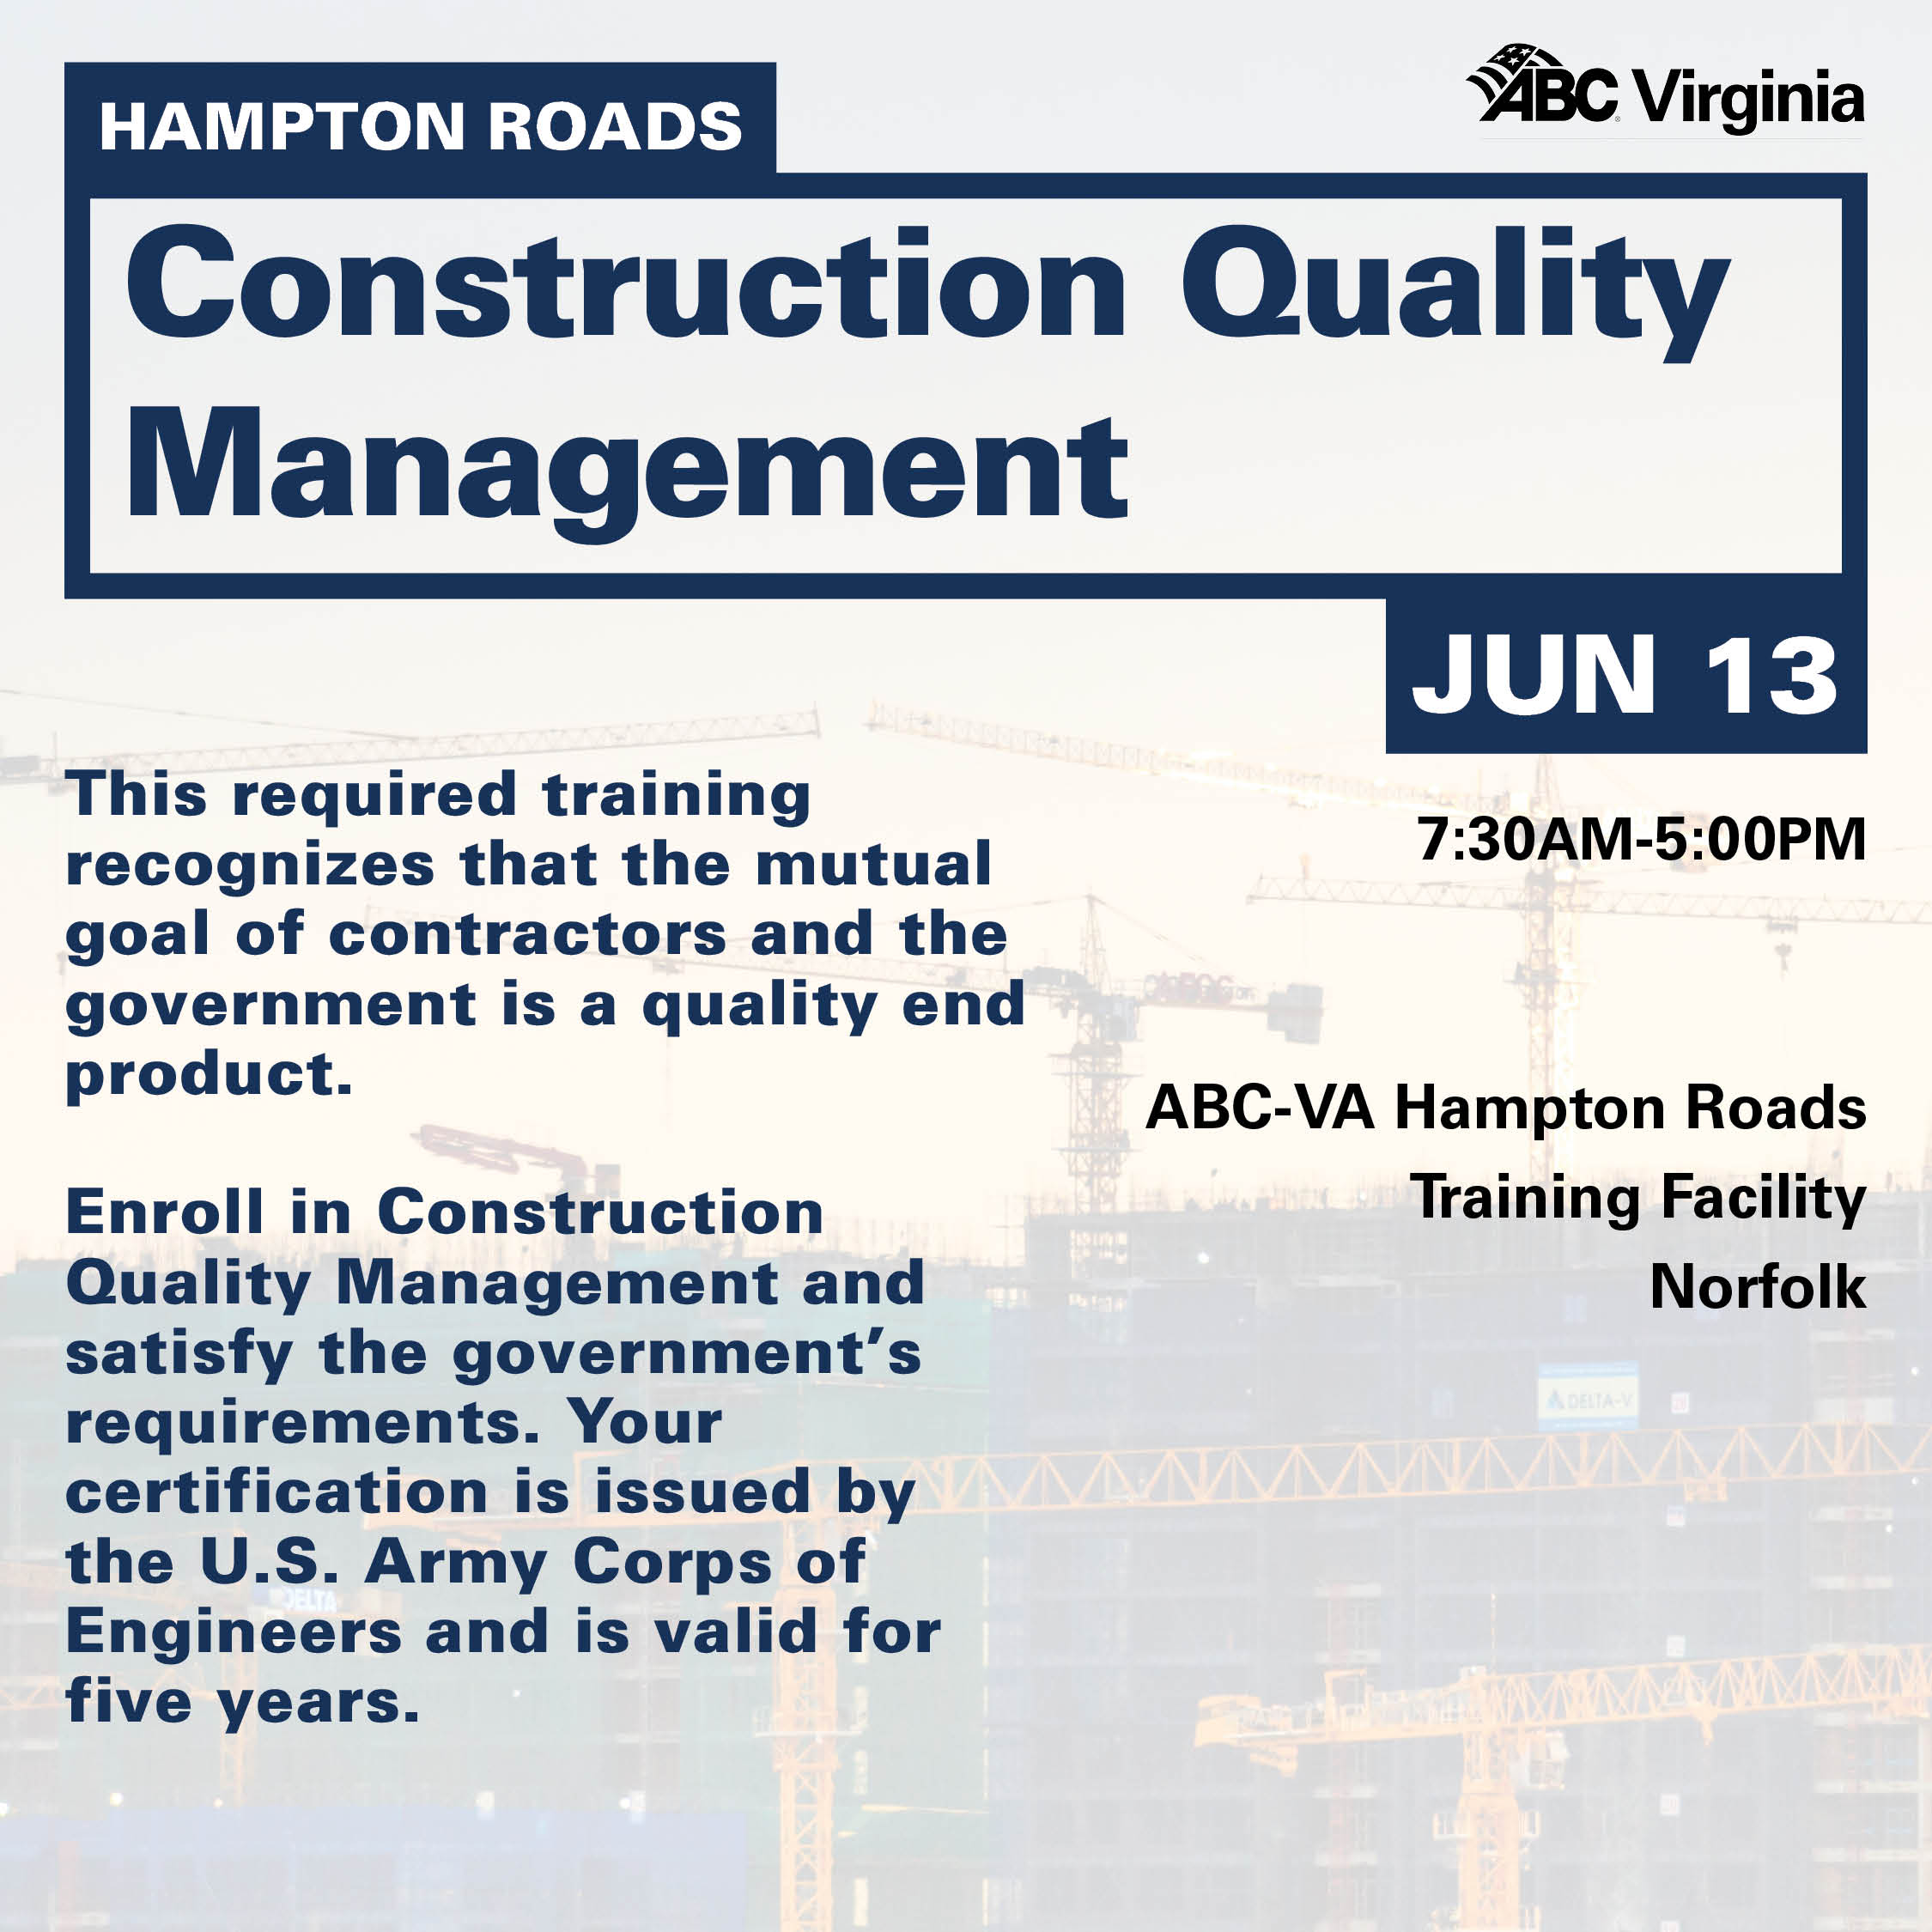 HR Construction Quality Management June 13 WEB